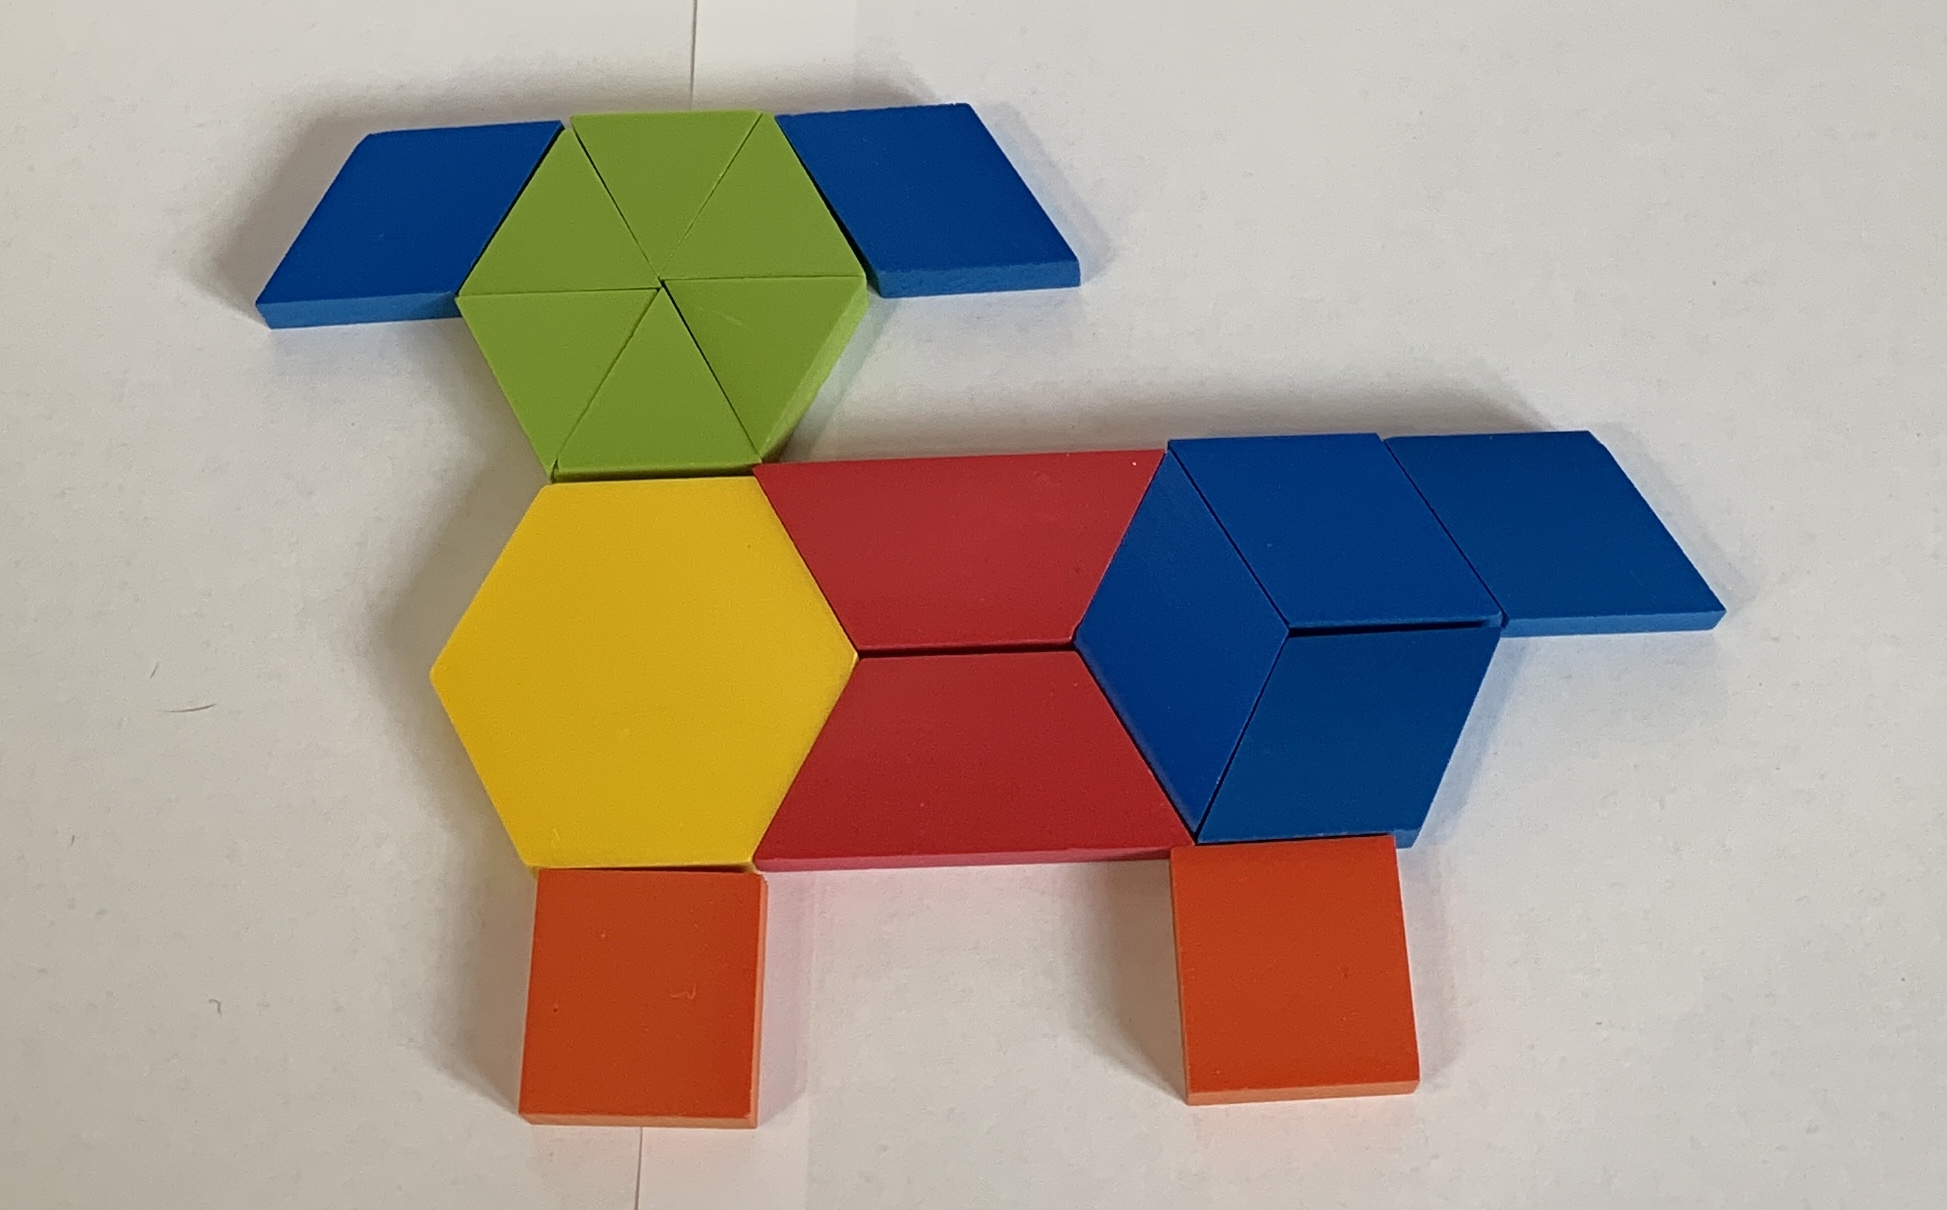 Perro formado por fichas geométricas. 1 ficha amarilla, 2 rojas, 6 azules, 6 verdes y 2 anaranjadas.